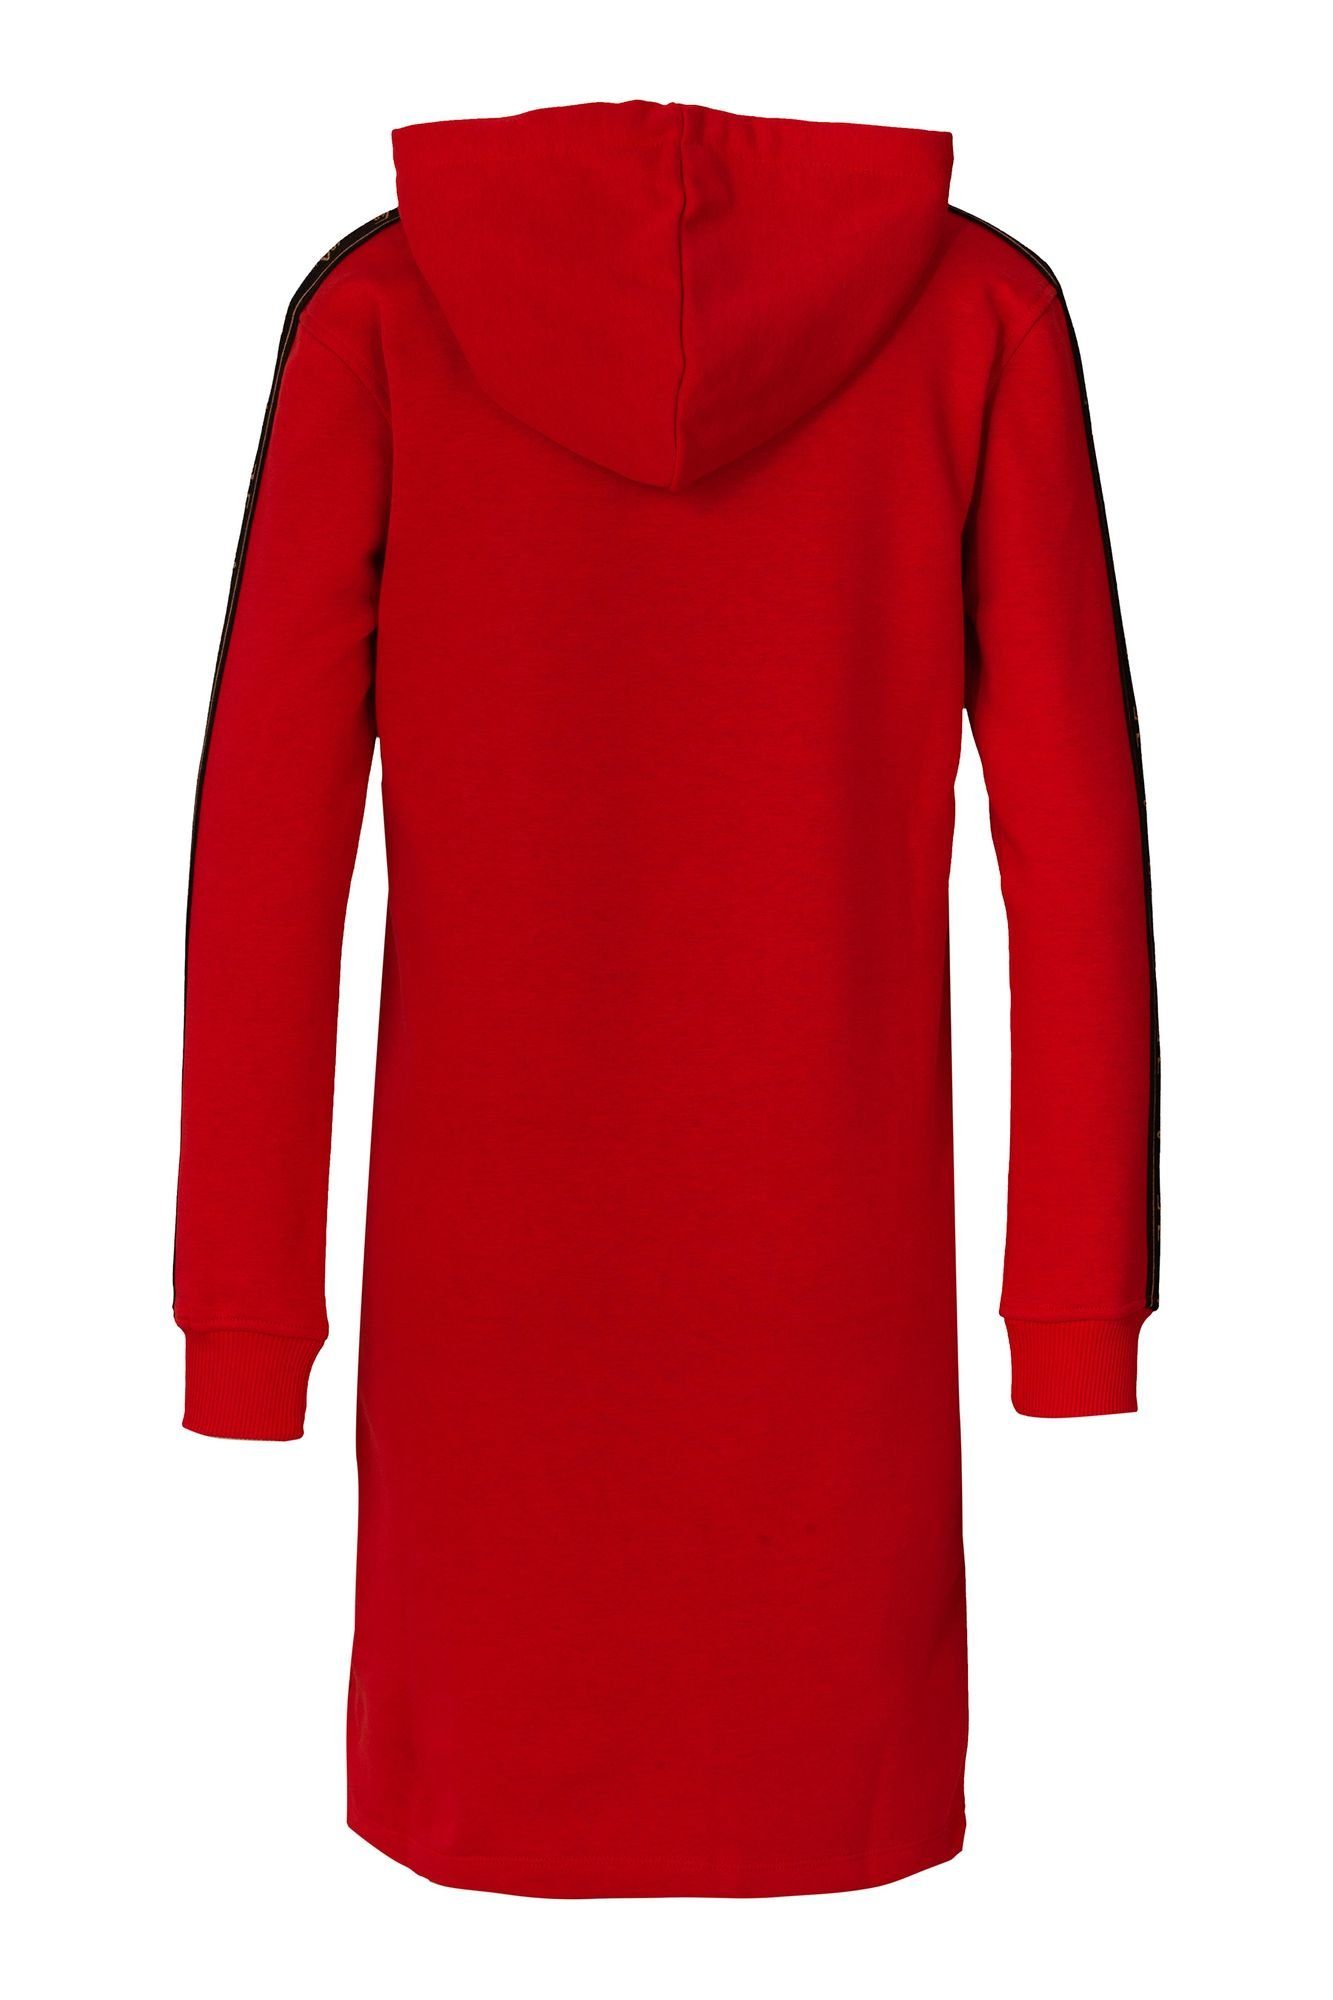 Damen Kleider 19V69 Italia by Versace Sweatkleid Vittoria-024